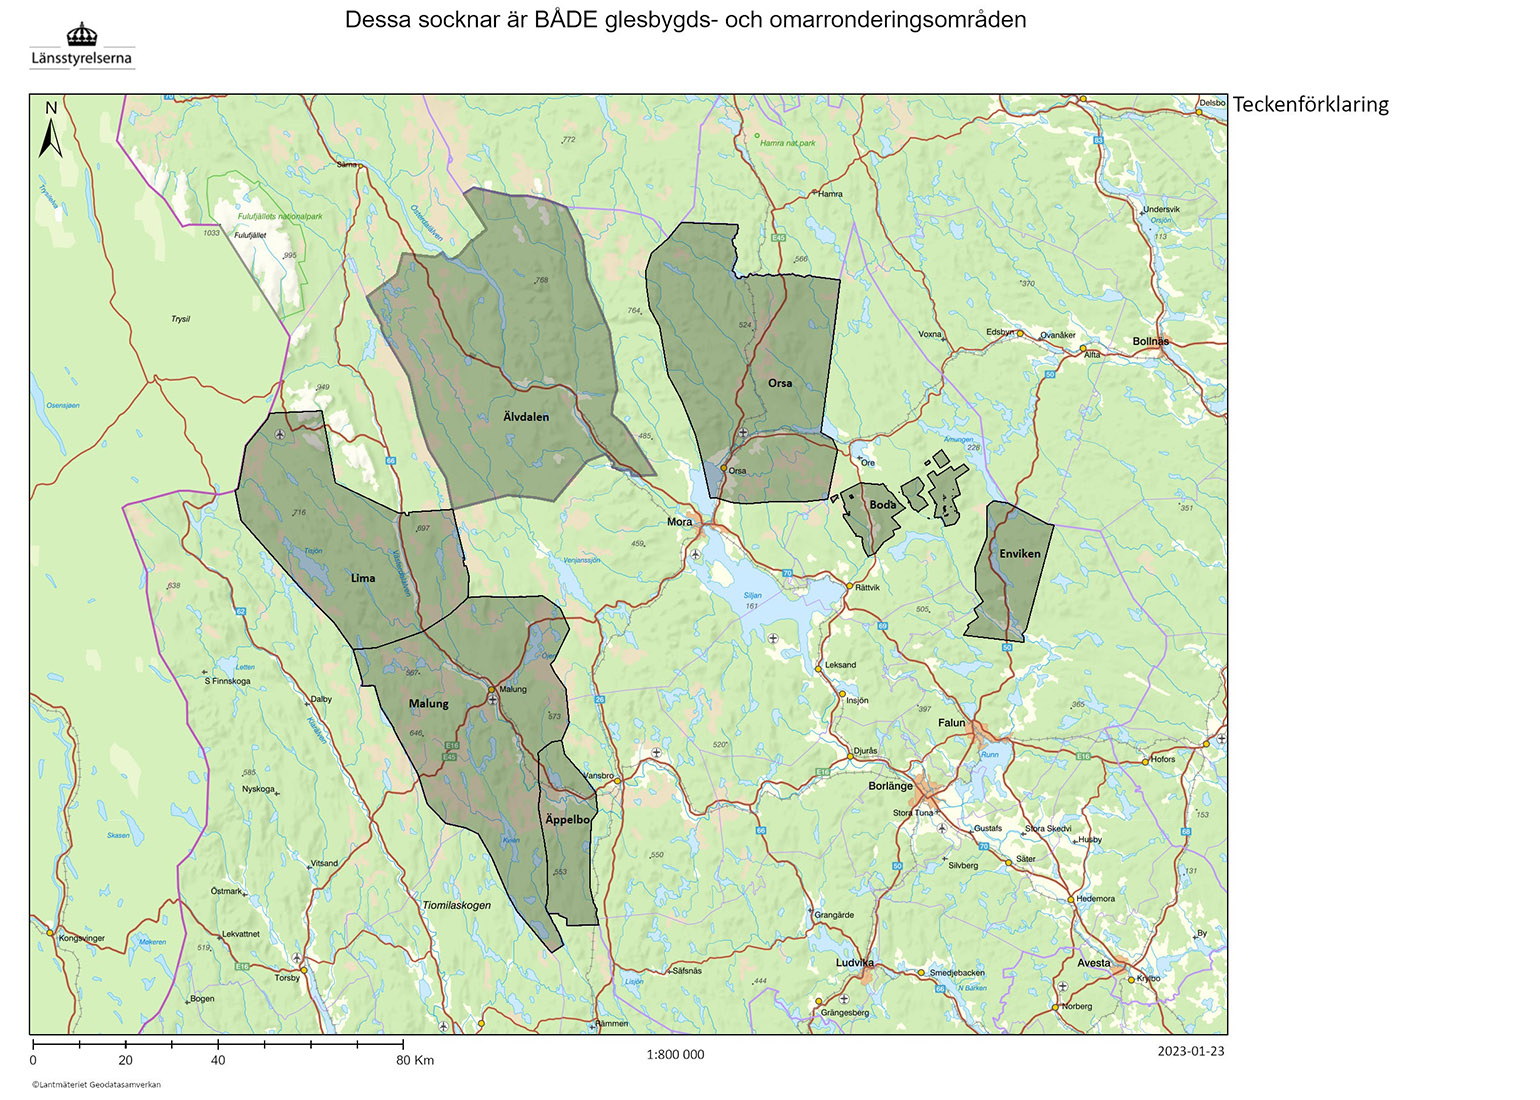 Kartbild med Dalarnas glesbygds- och omarronderingsområden. 